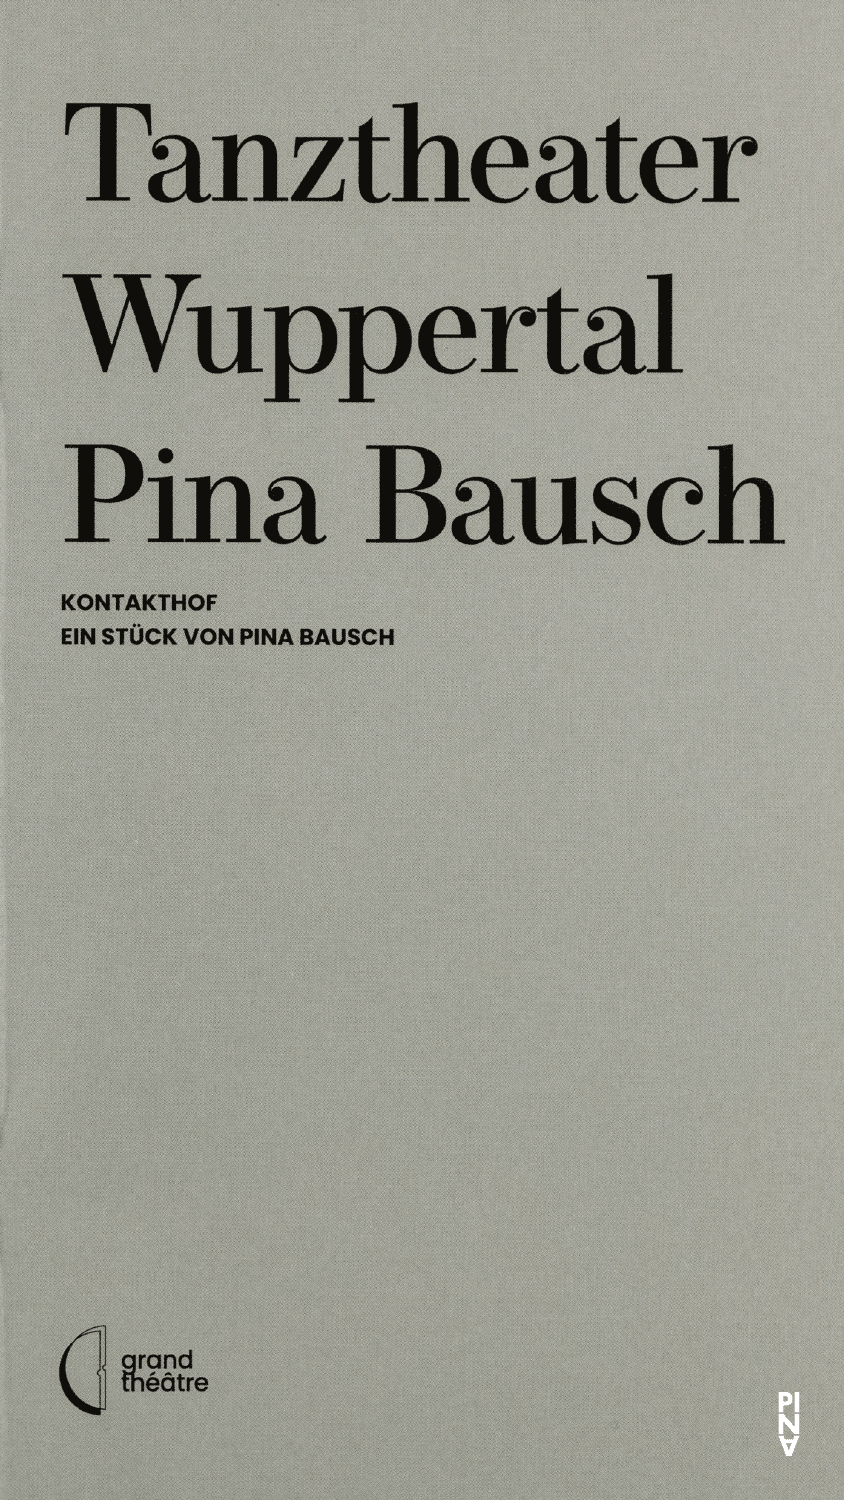 Programmheft zu „Kontakthof“ von Pina Bausch mit Tanztheater Wuppertal in Luxemburg, 02.12.2021–05.12.2021